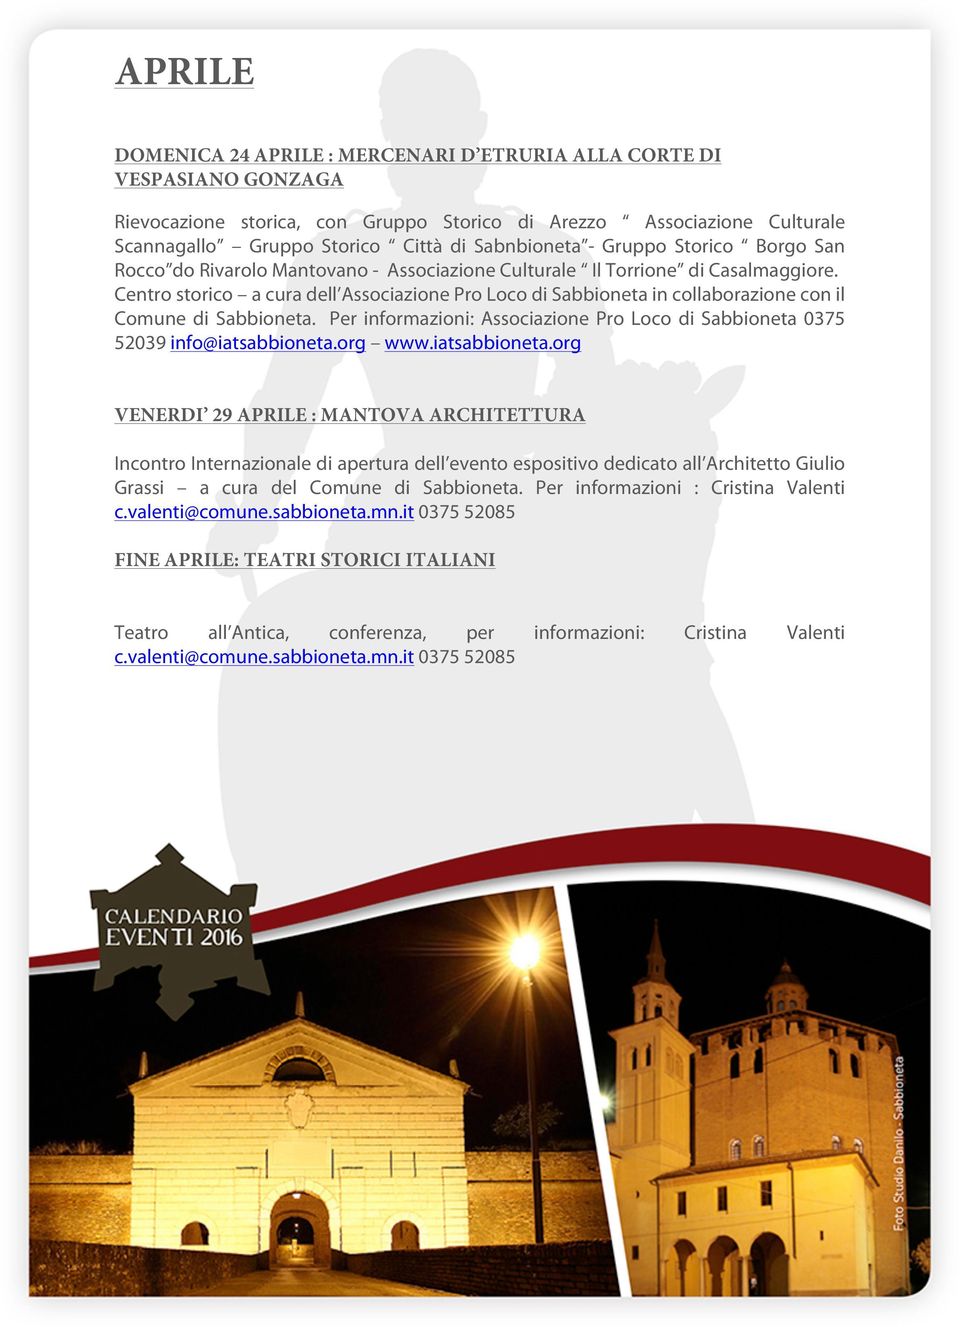 Centro storico a cura dell Associazione Pro Loco di Sabbioneta in collaborazione con il Comune di Sabbioneta. Per informazioni: Associazione Pro Loco di Sabbioneta 0375 52039 info@iatsabbioneta.